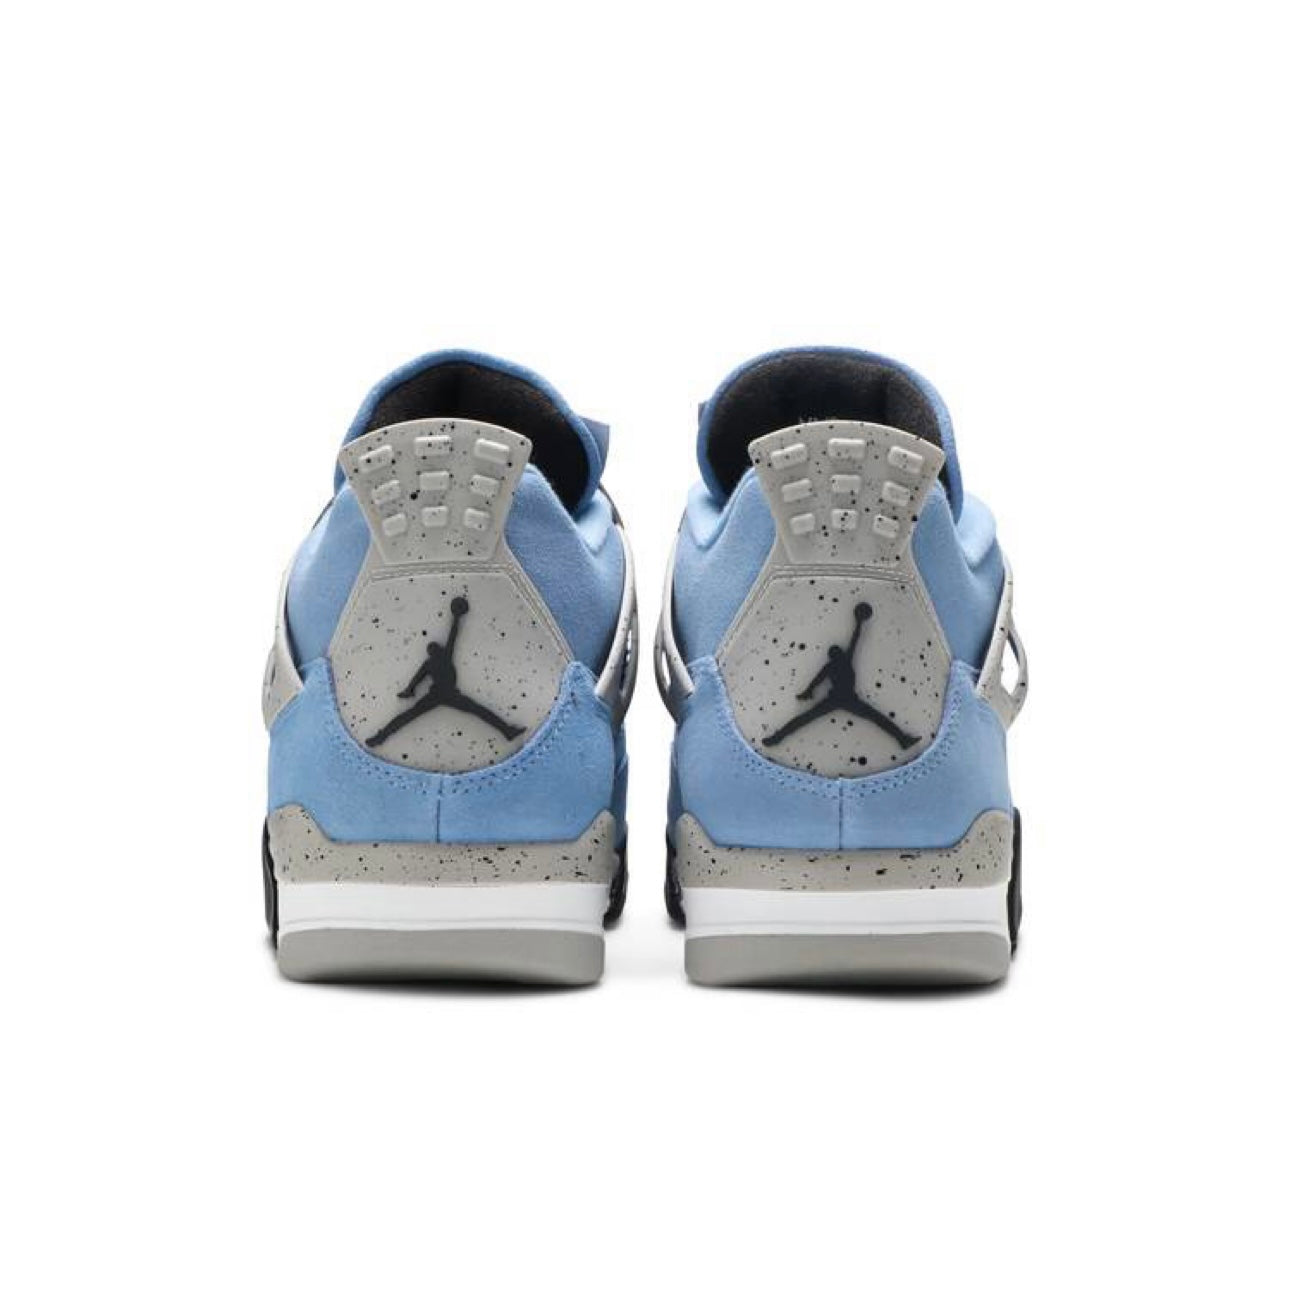 Air Jordan 4 ‘University Blue’ (Men’s)